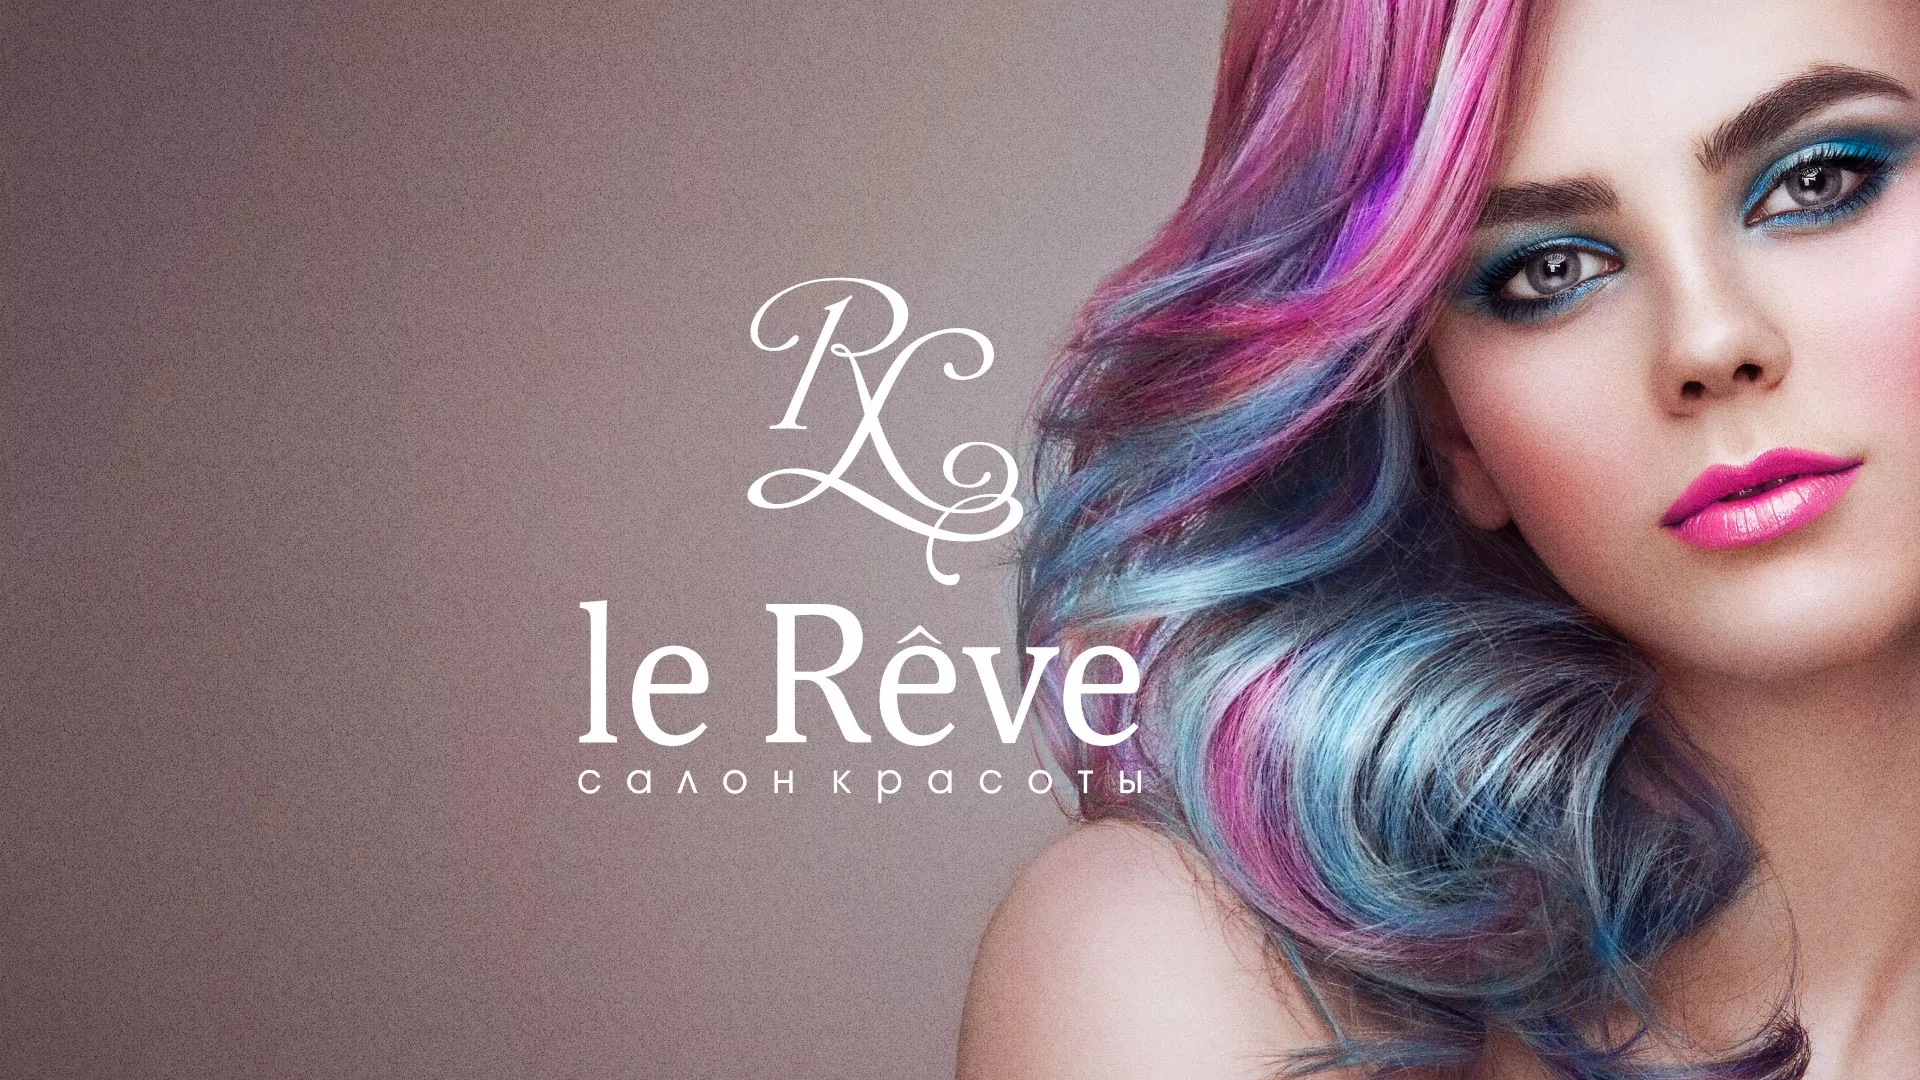 Создание сайта для салона красоты «Le Reve» в Юрьевце